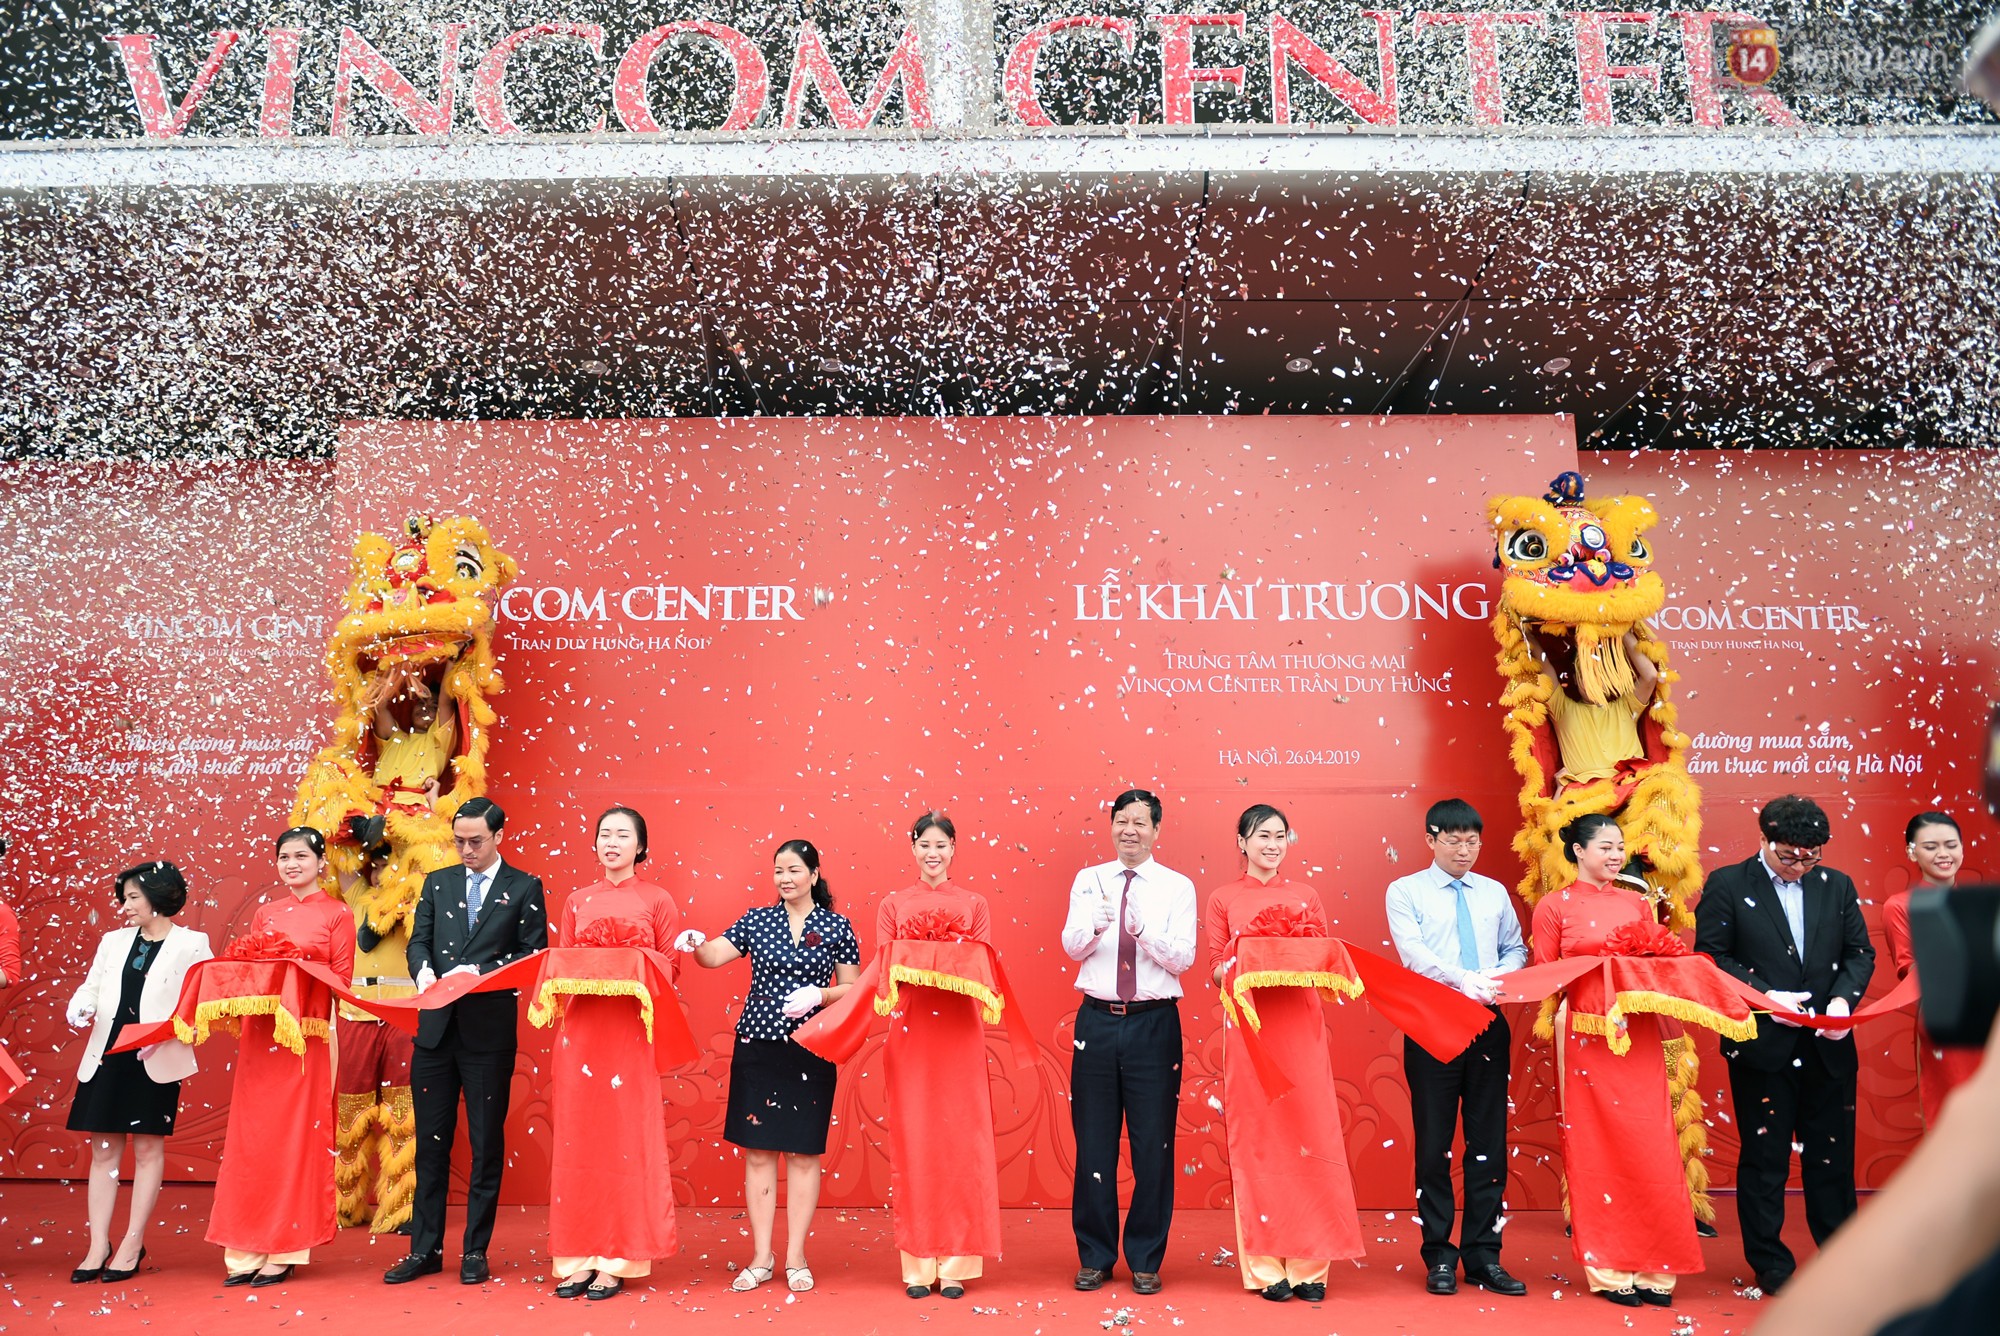 Hà Nội: Chính thức khai trương Vincom Center thứ 10 tại Trần Duy Hưng - Ảnh 1.